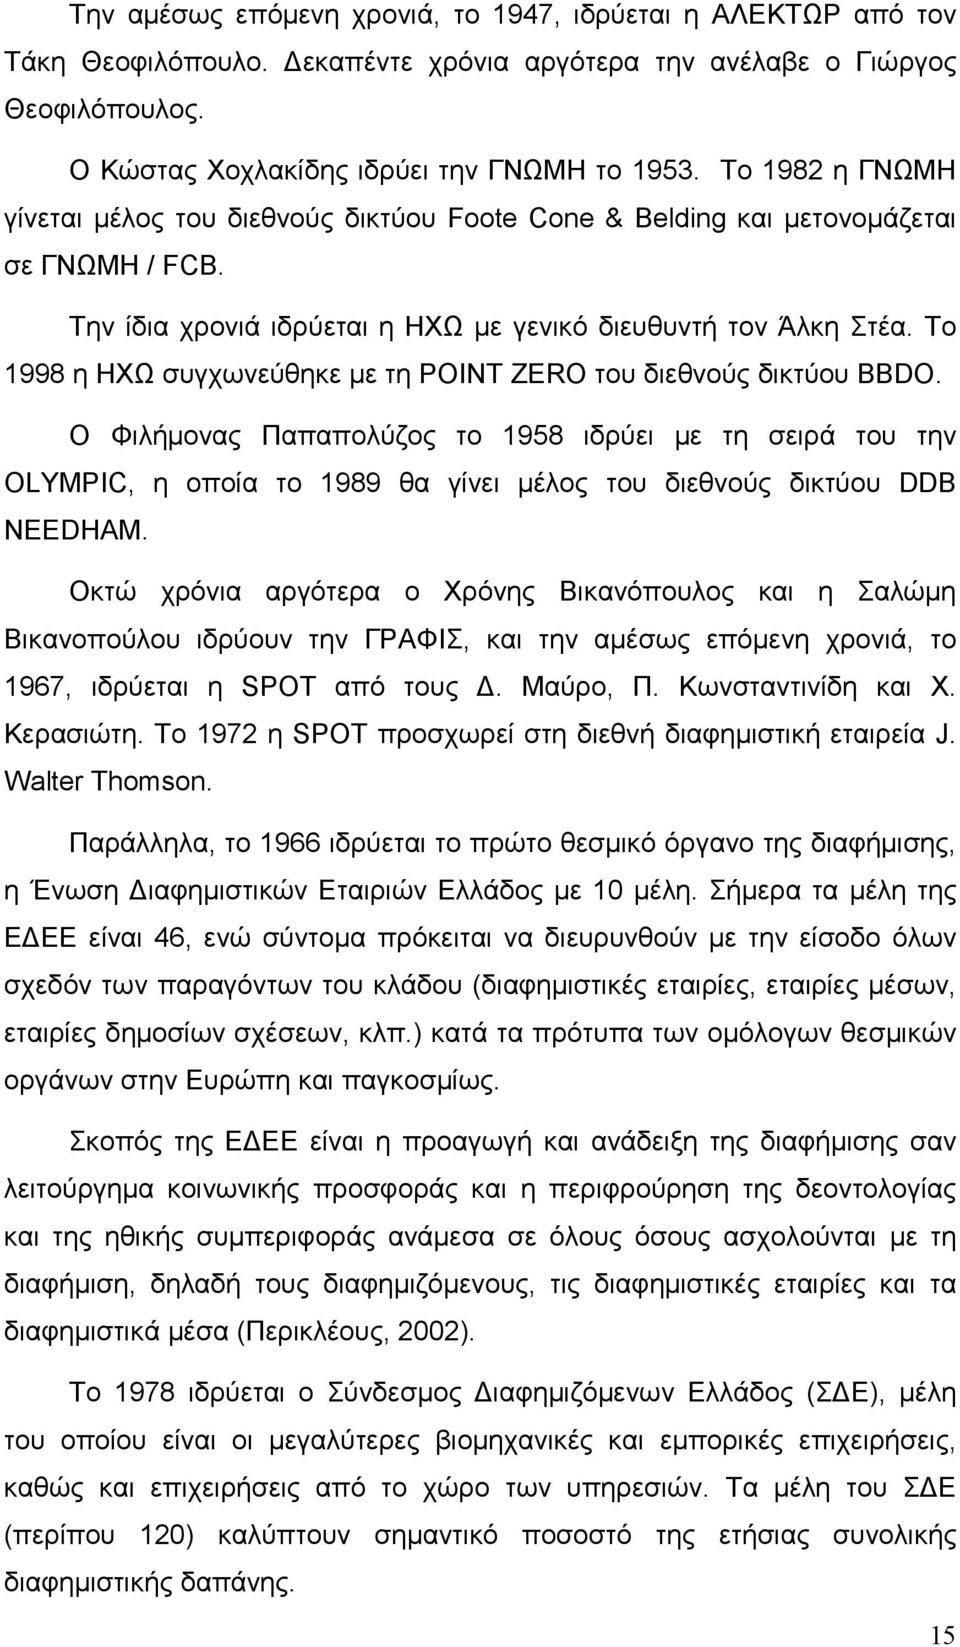 Το 1998 η ΗΧΩ συγχωνεύθηκε µε τη POINT ZERO του διεθνούς δικτύου BBDO.